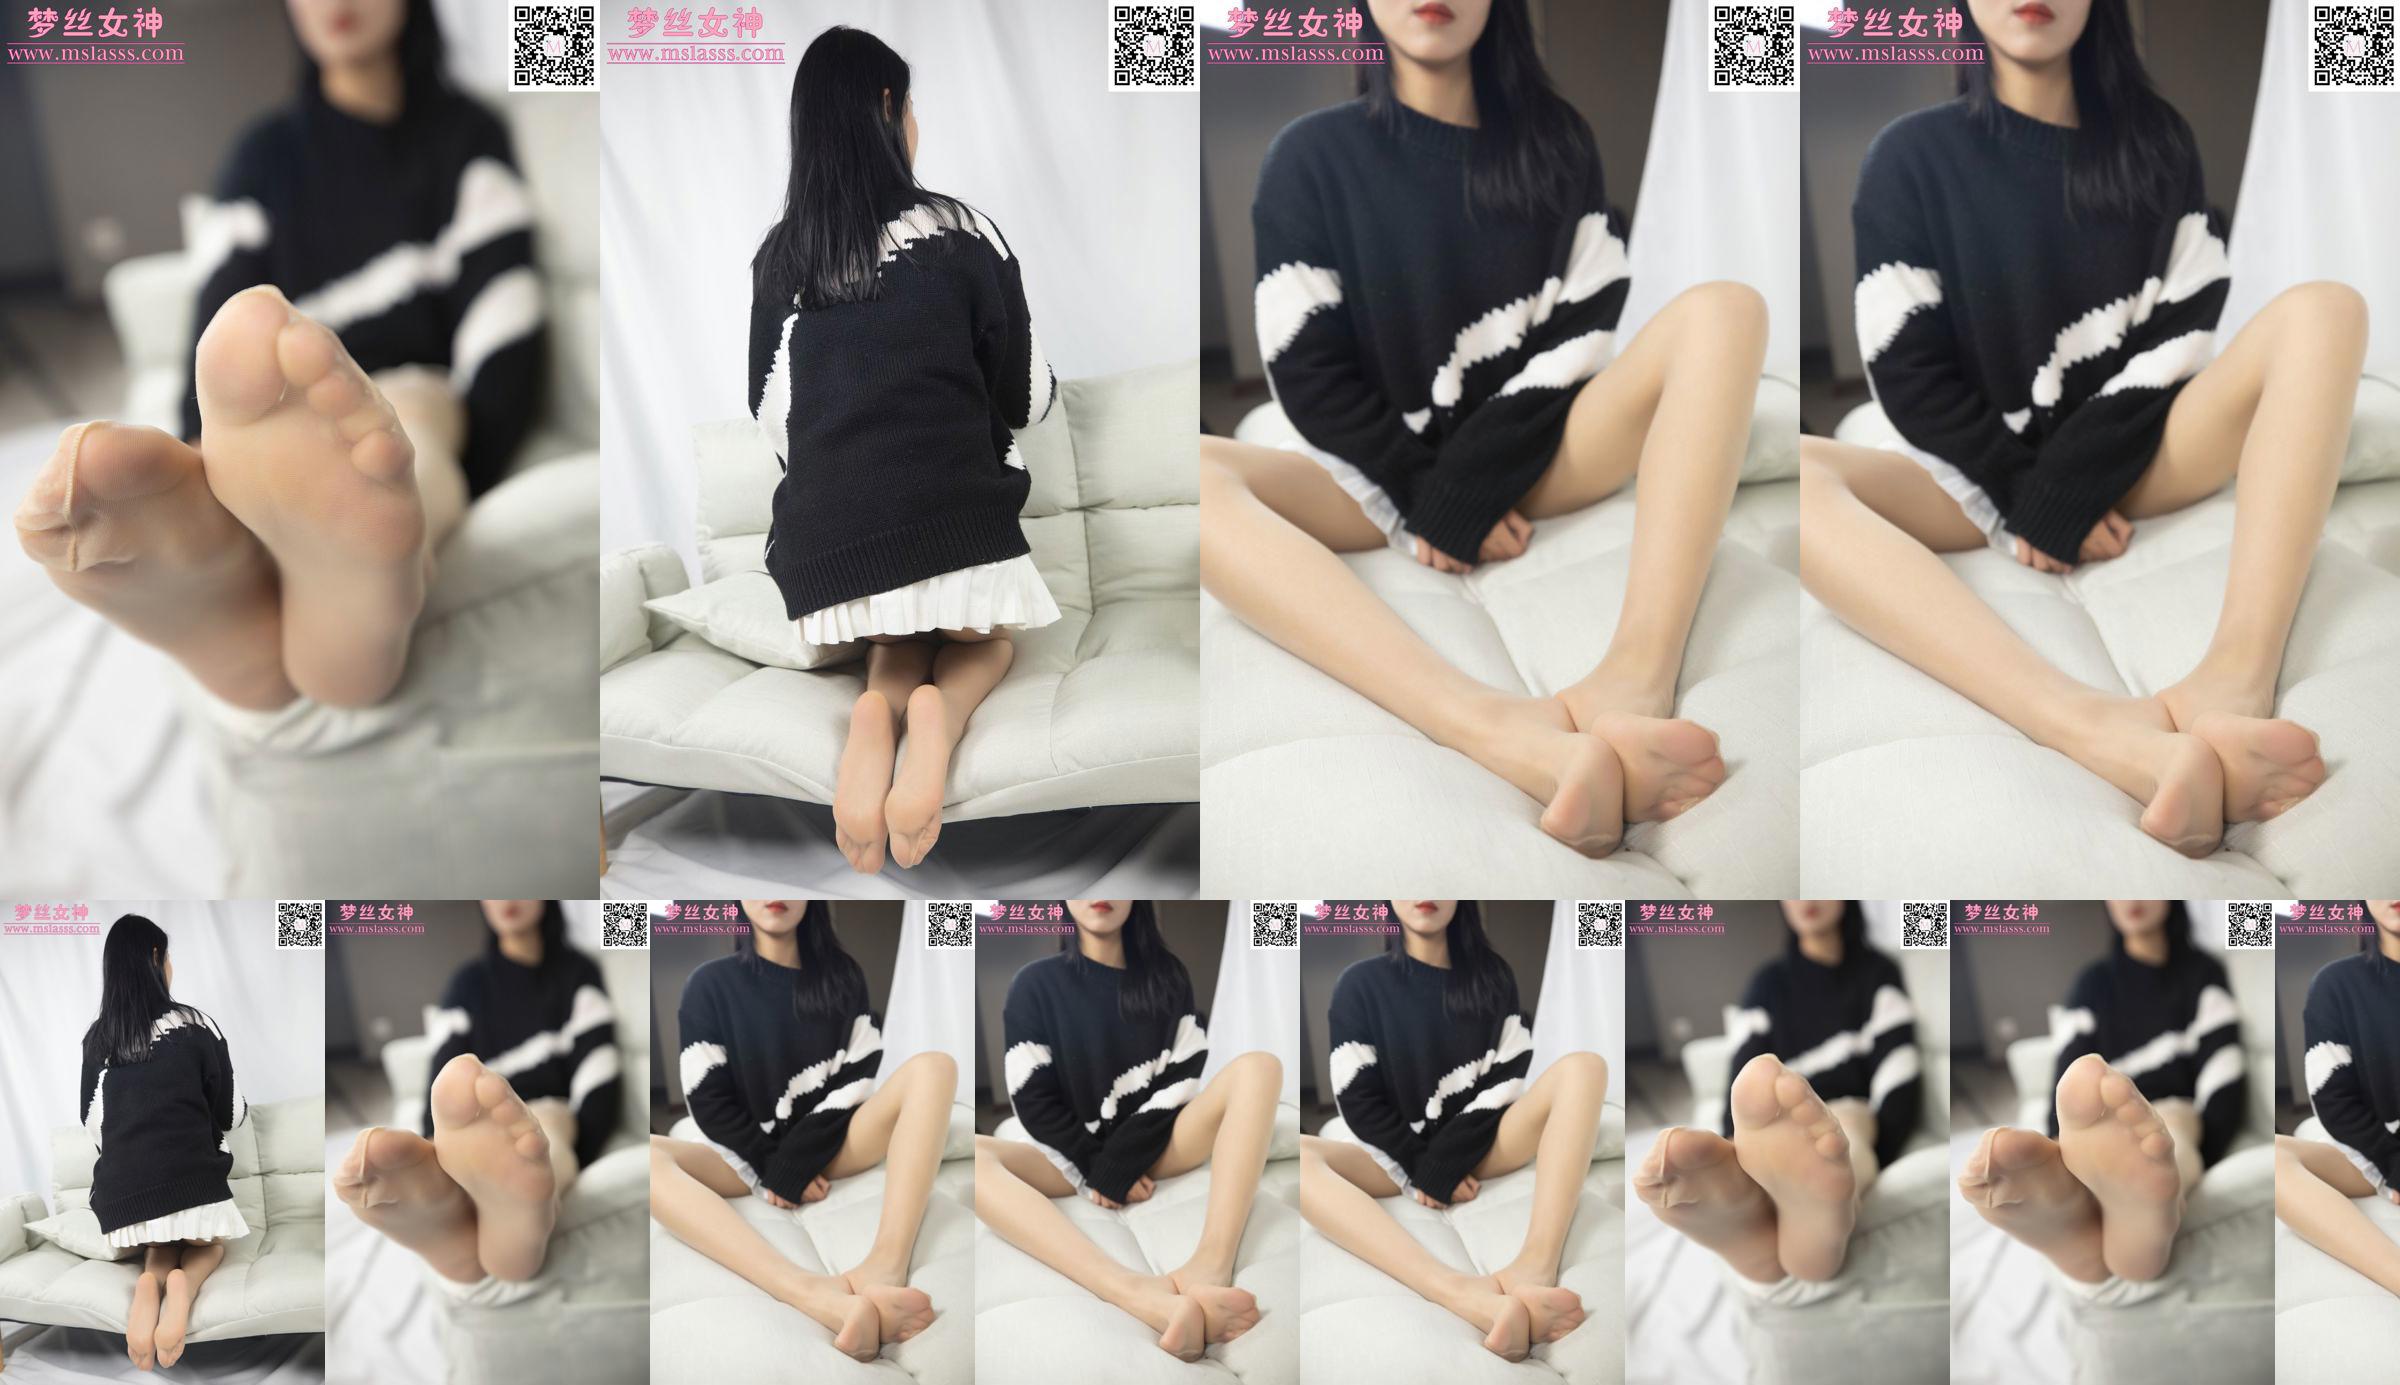 [Goddess of Dreams MSLASS] Xiaomi's trui kan haar lange benen niet stoppen No.d4be6f Pagina 1